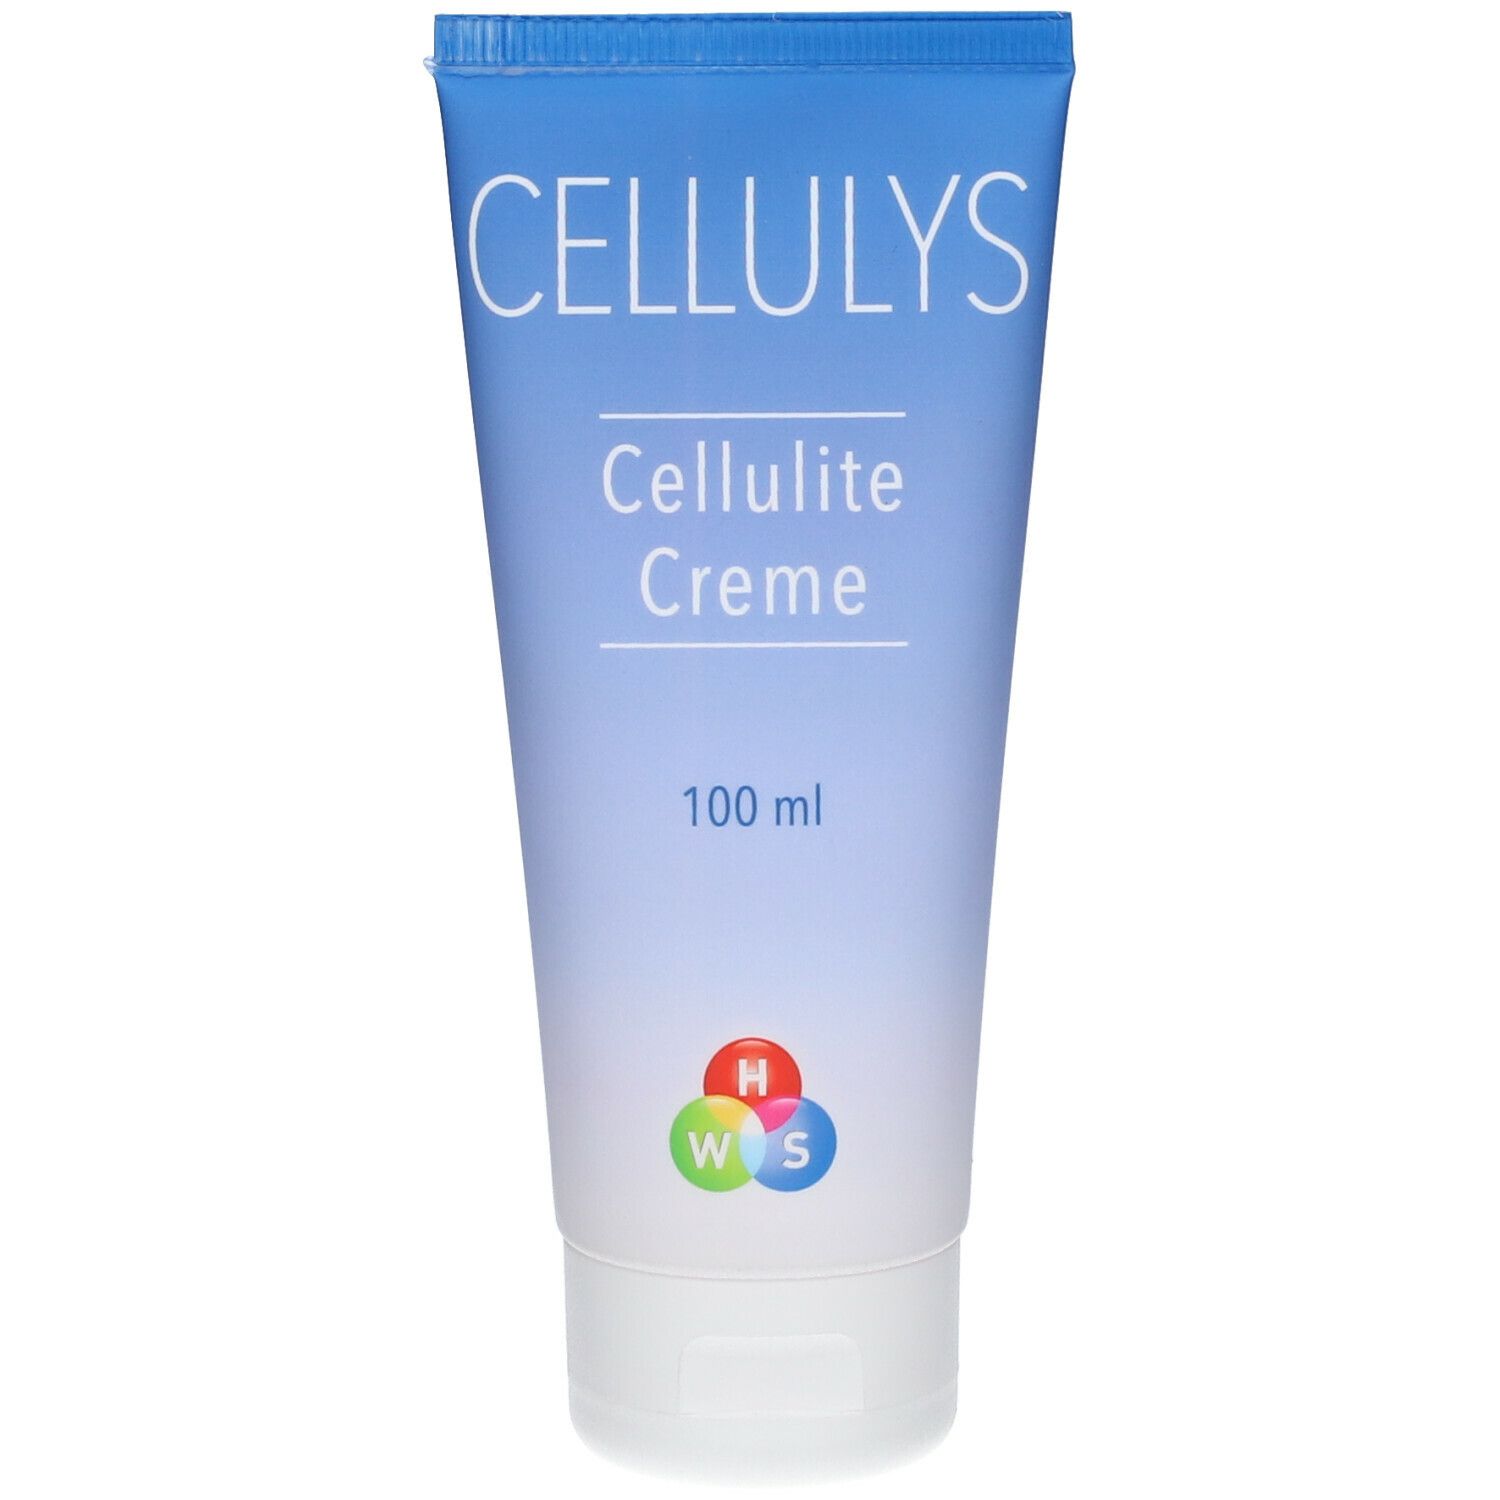 CELLULYS Cellulite Creme